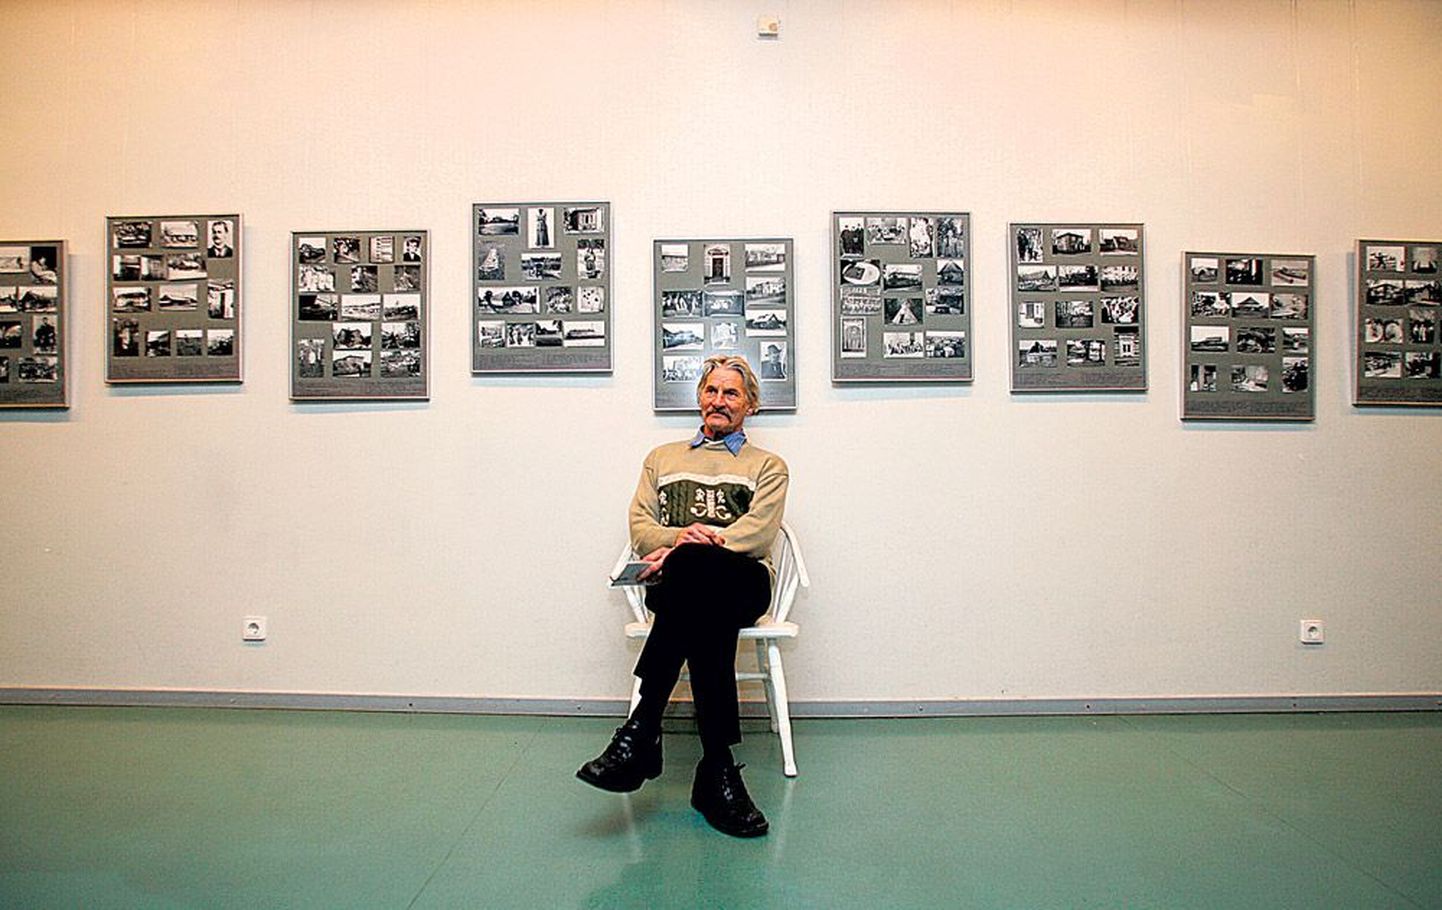 Eesti Rahva Muuseumi fotokogu põhjal koostatud näituse «Tuhande sammuga» on välja mõelnud ja koostanud fotokonservaator Jüri Karm.